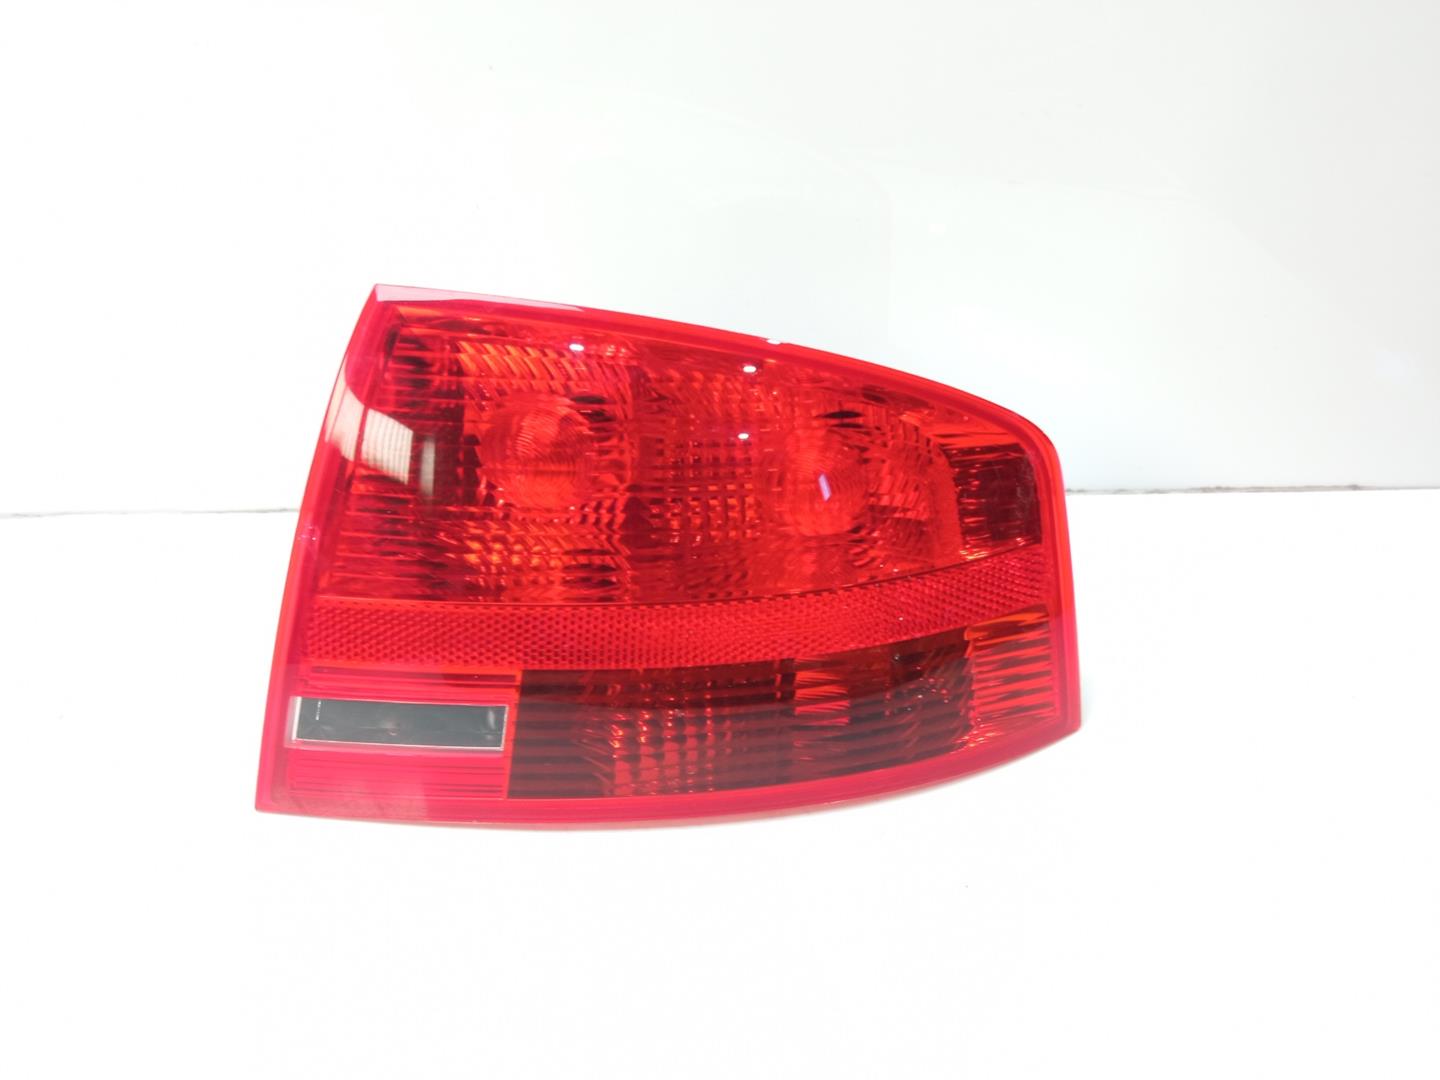 AUDI A4 B6/8E (2000-2005) Rear Right Taillight Lamp 8E5945096 18479238